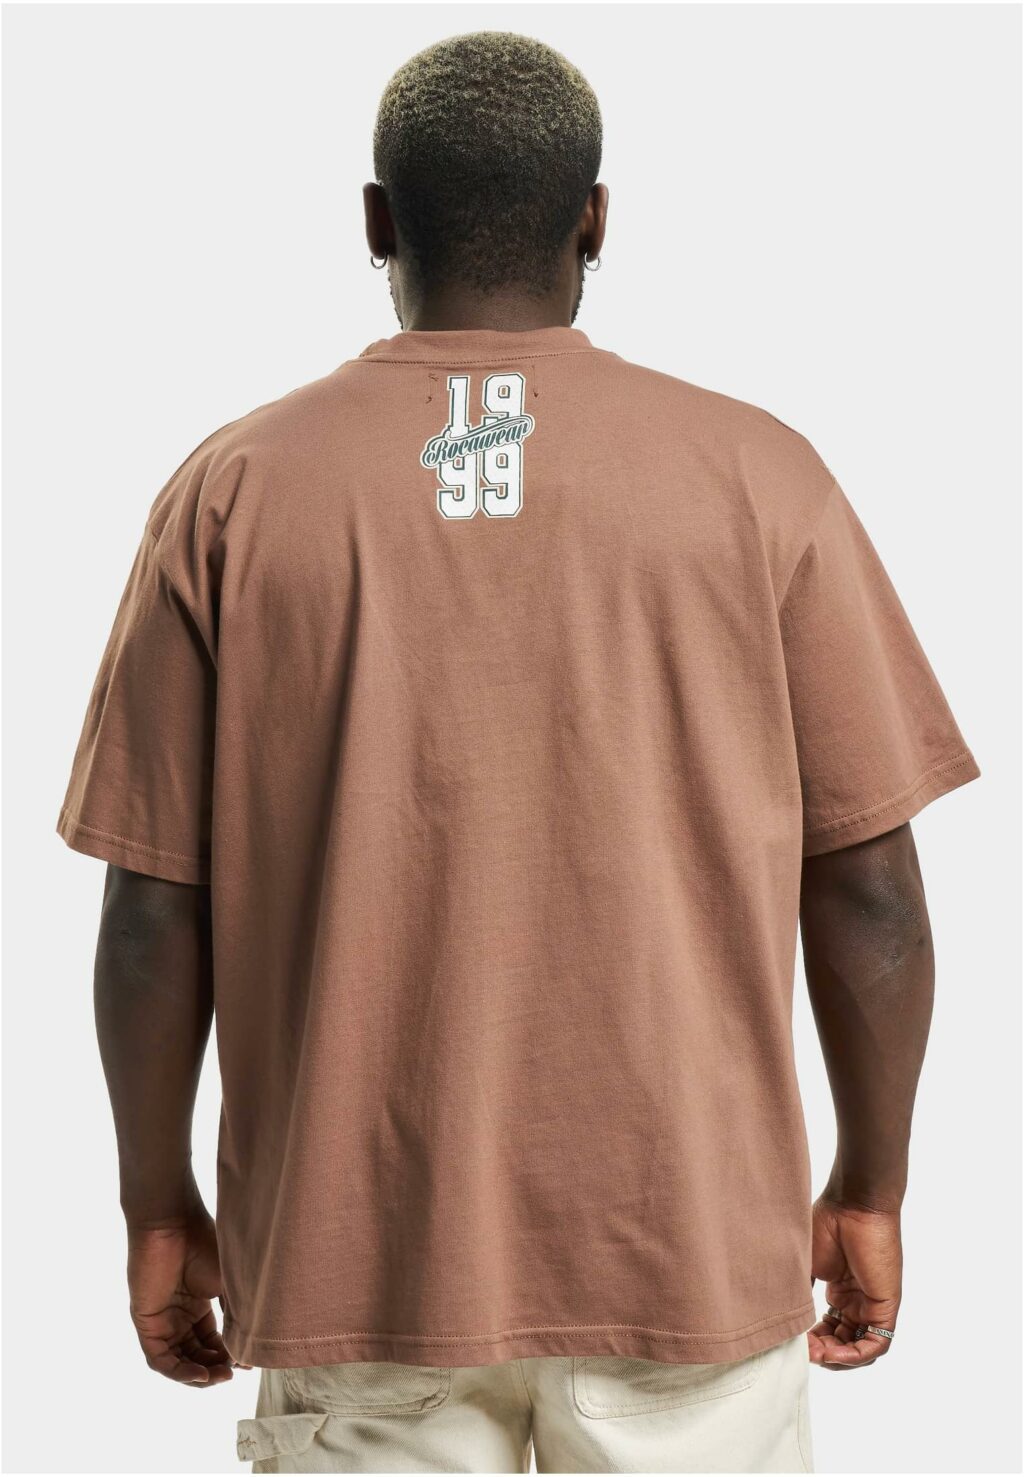 Rocawear Luisville T-Shirt brown RWTS093